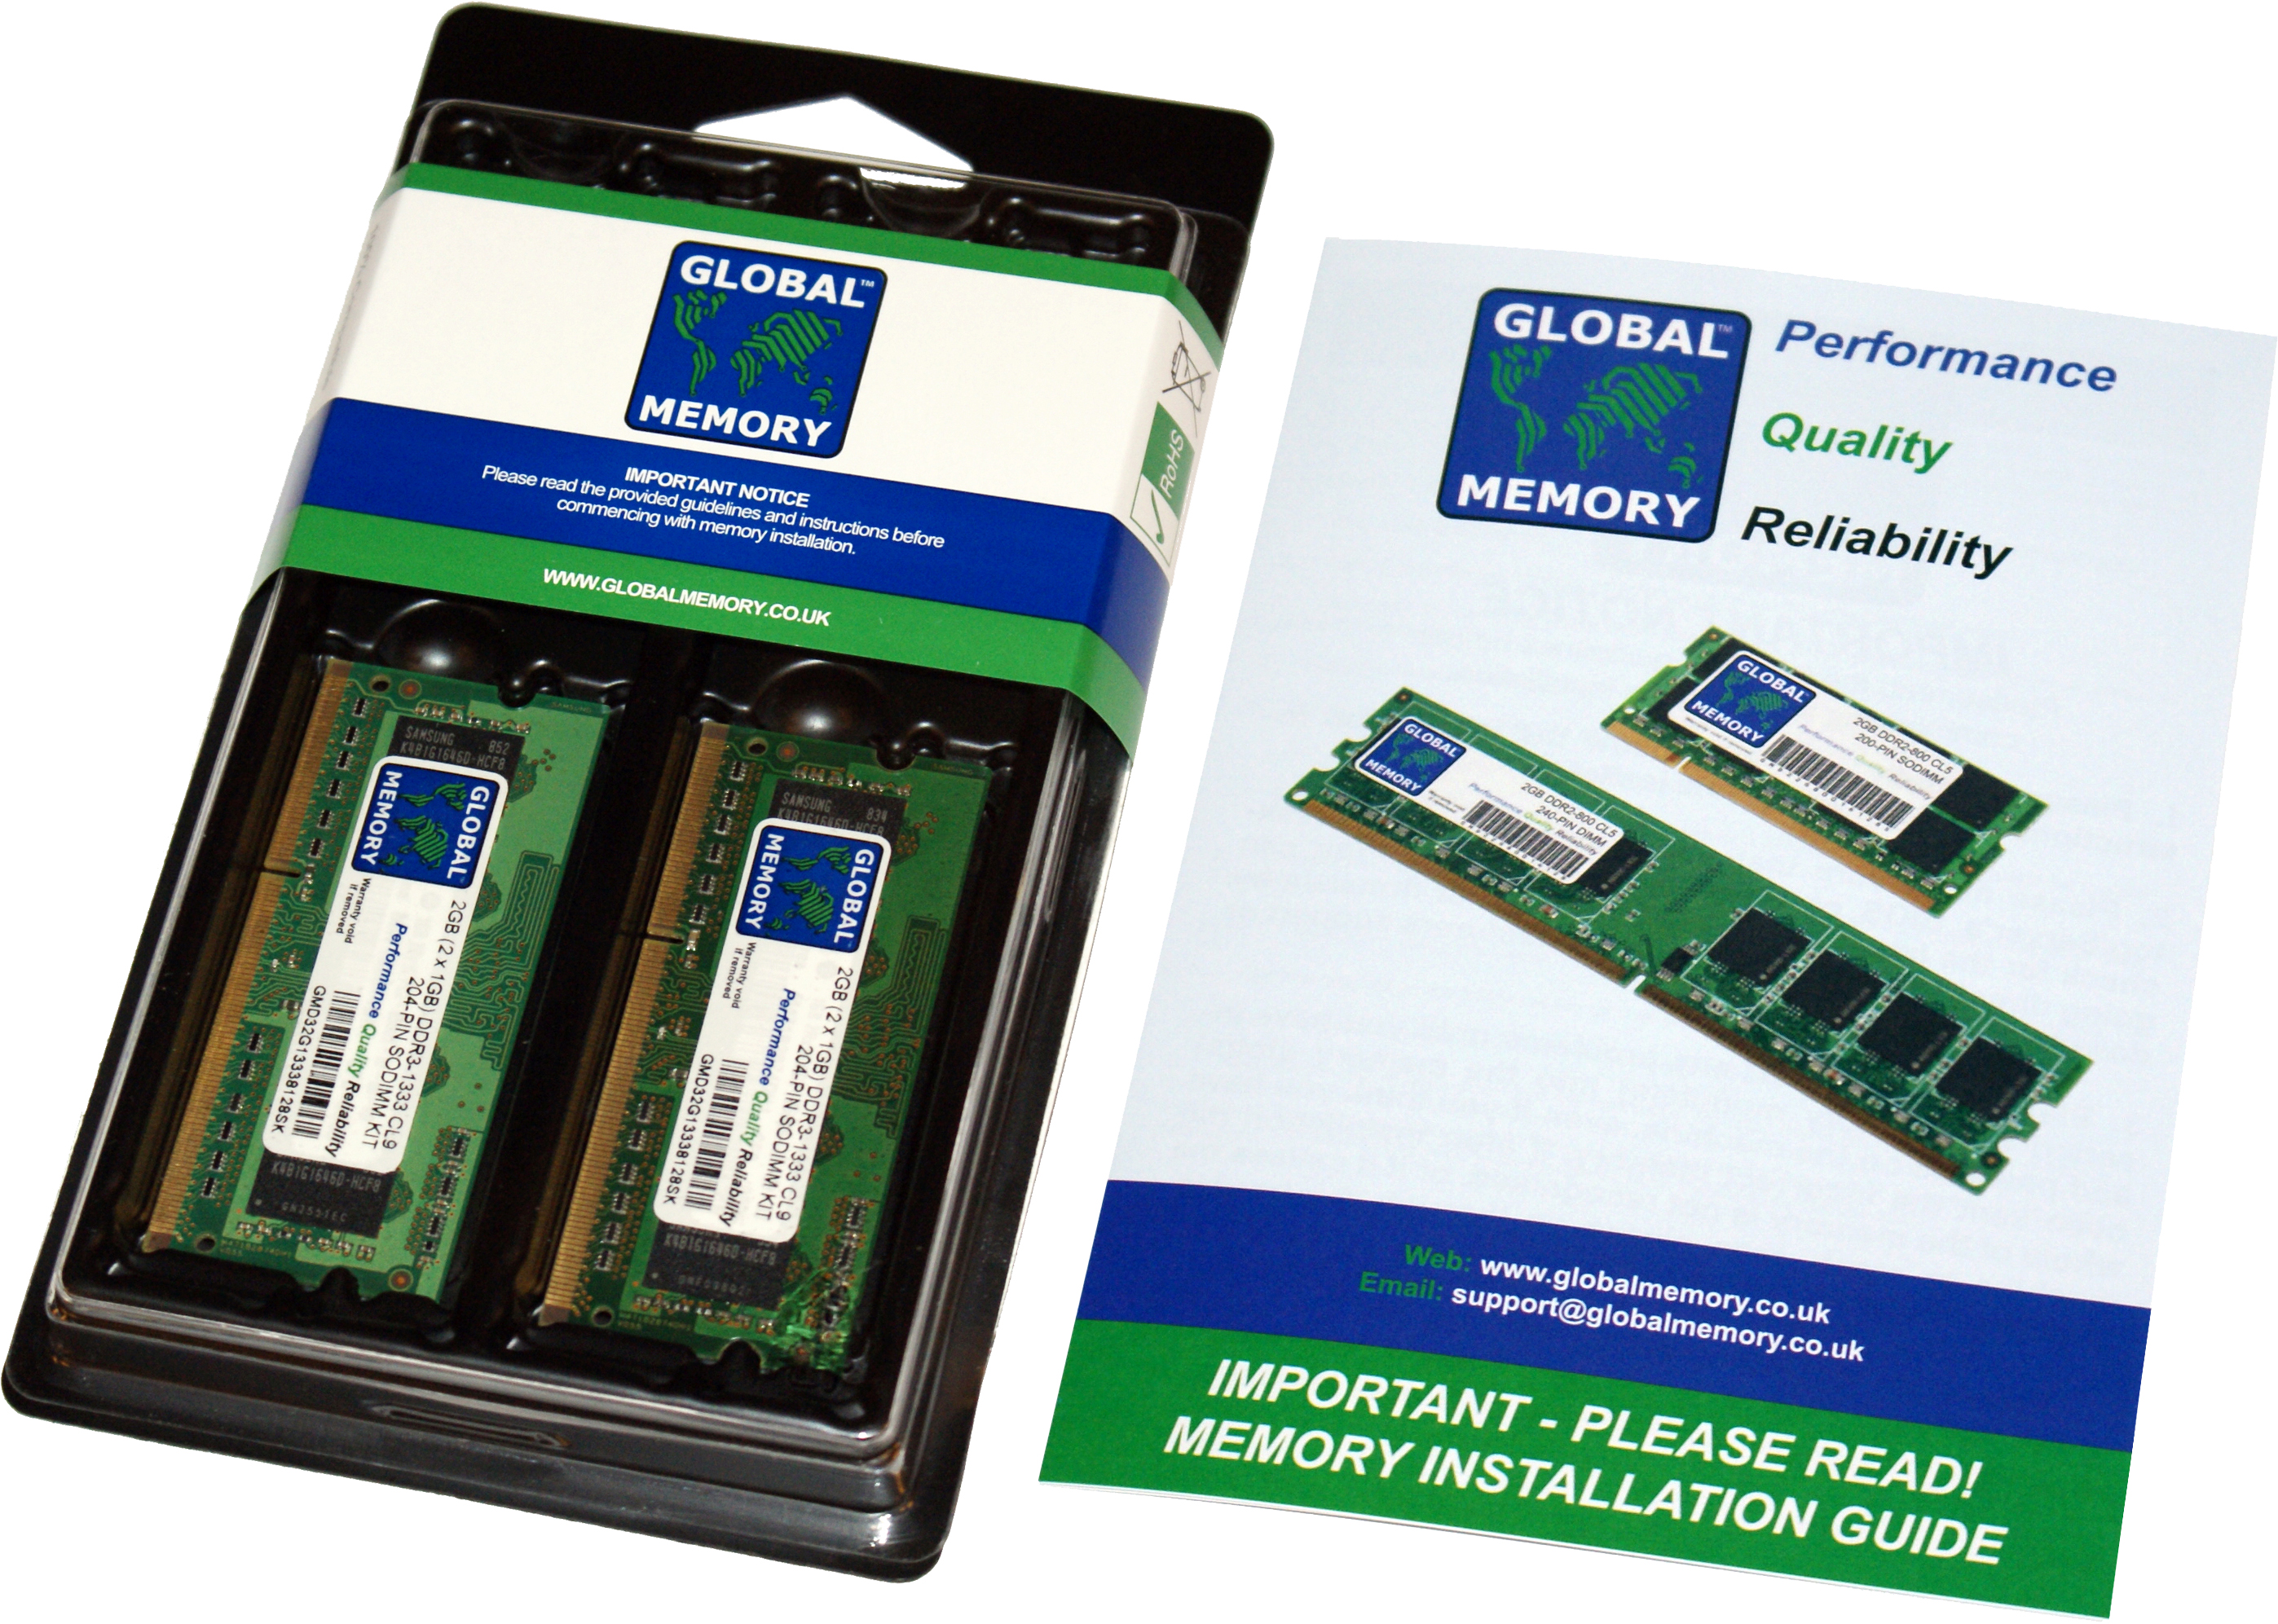 16GB (2 x 8GB) DDR4 2933MHz PC4-23400 260-PIN SODIMM MEMORY RAM KIT FOR FUJITSU LAPTOPS/NOTEBOOKS